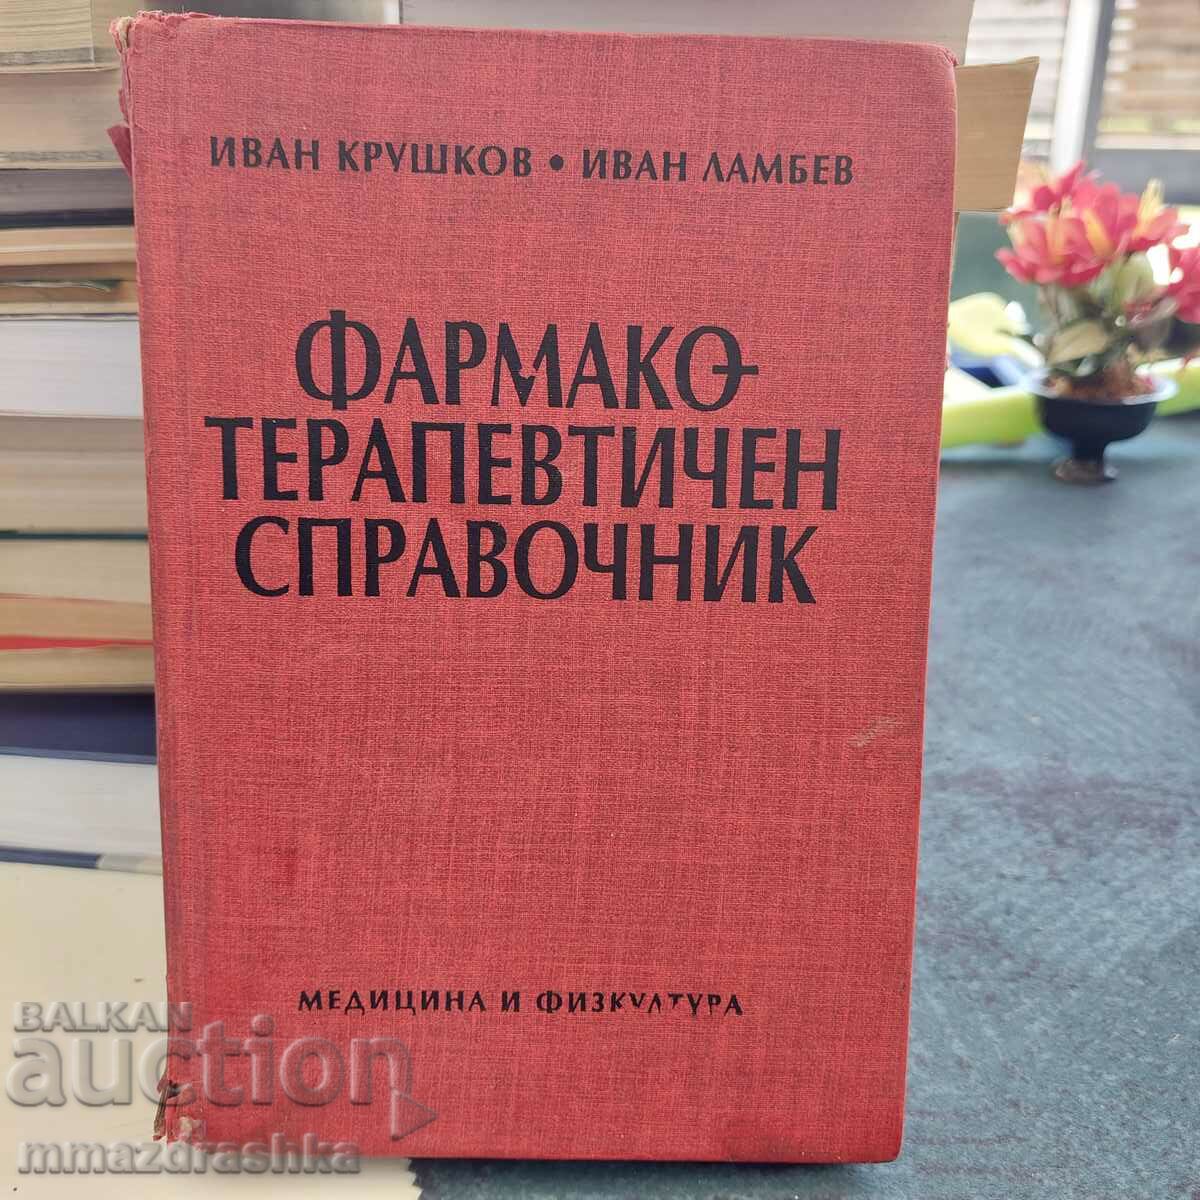 Φαρμακοθεραπευτικό λεξικό, I. Krushkov